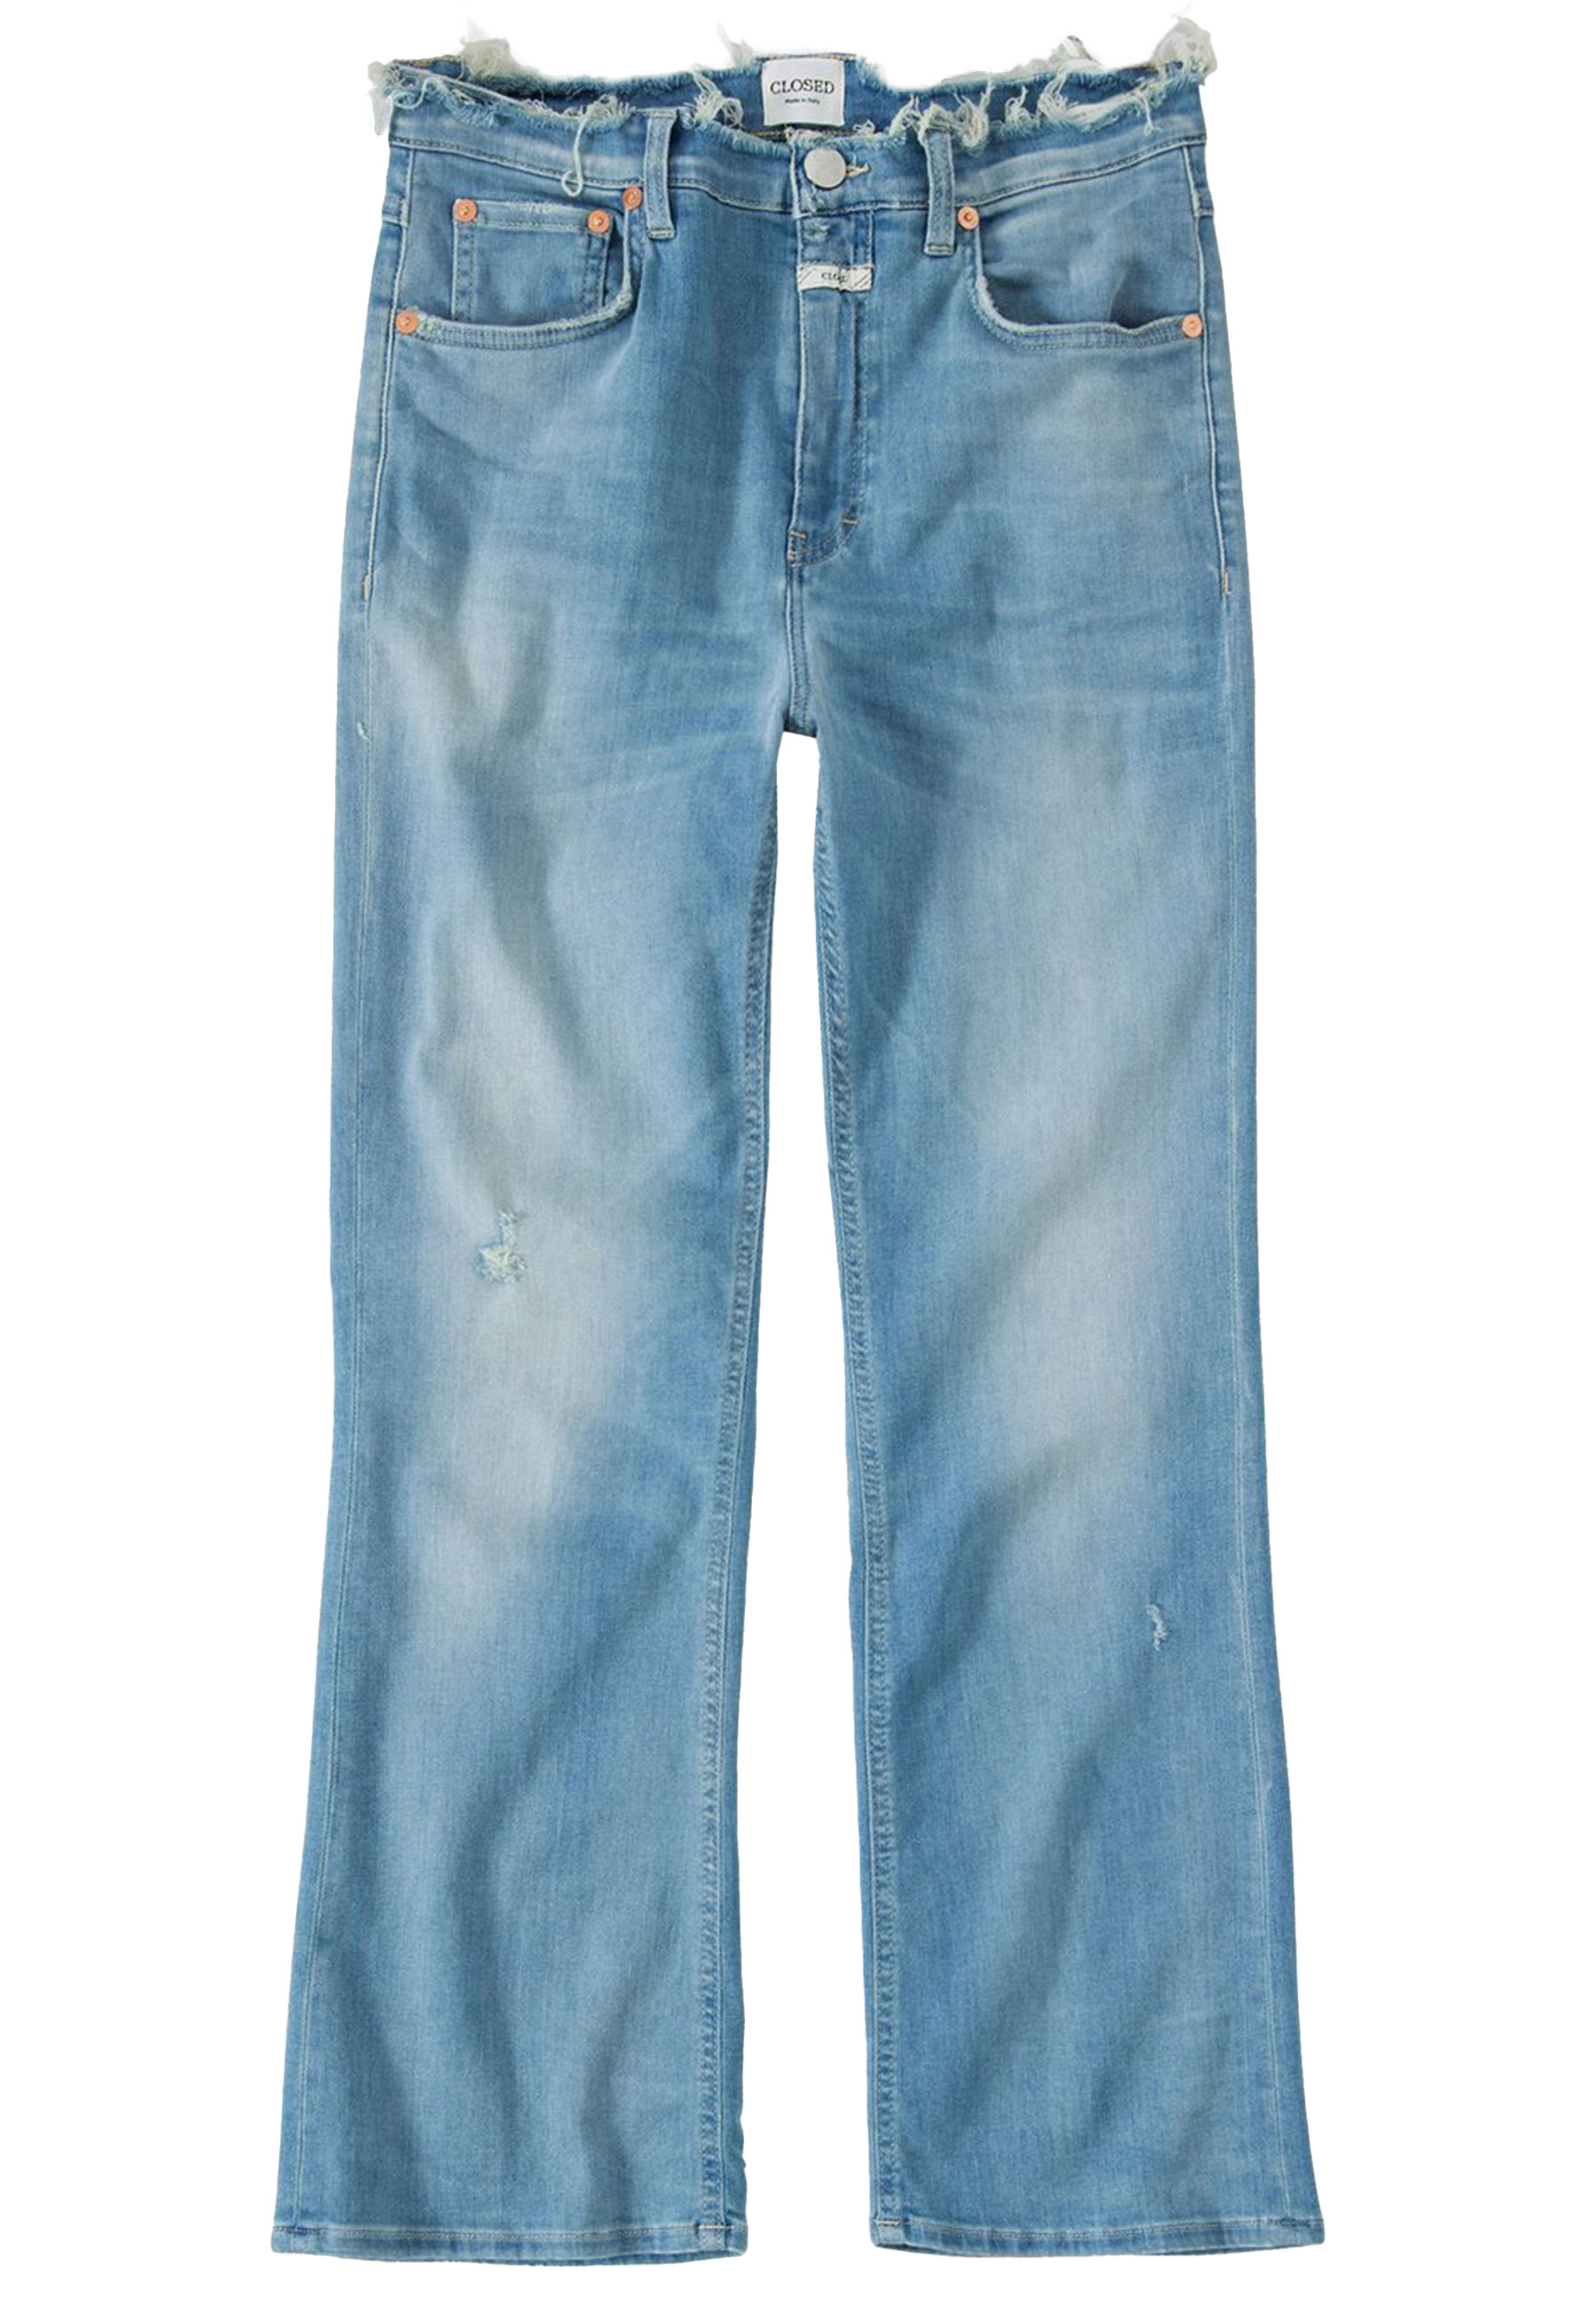 Jeans Blauw Hi-sun jeans blauw